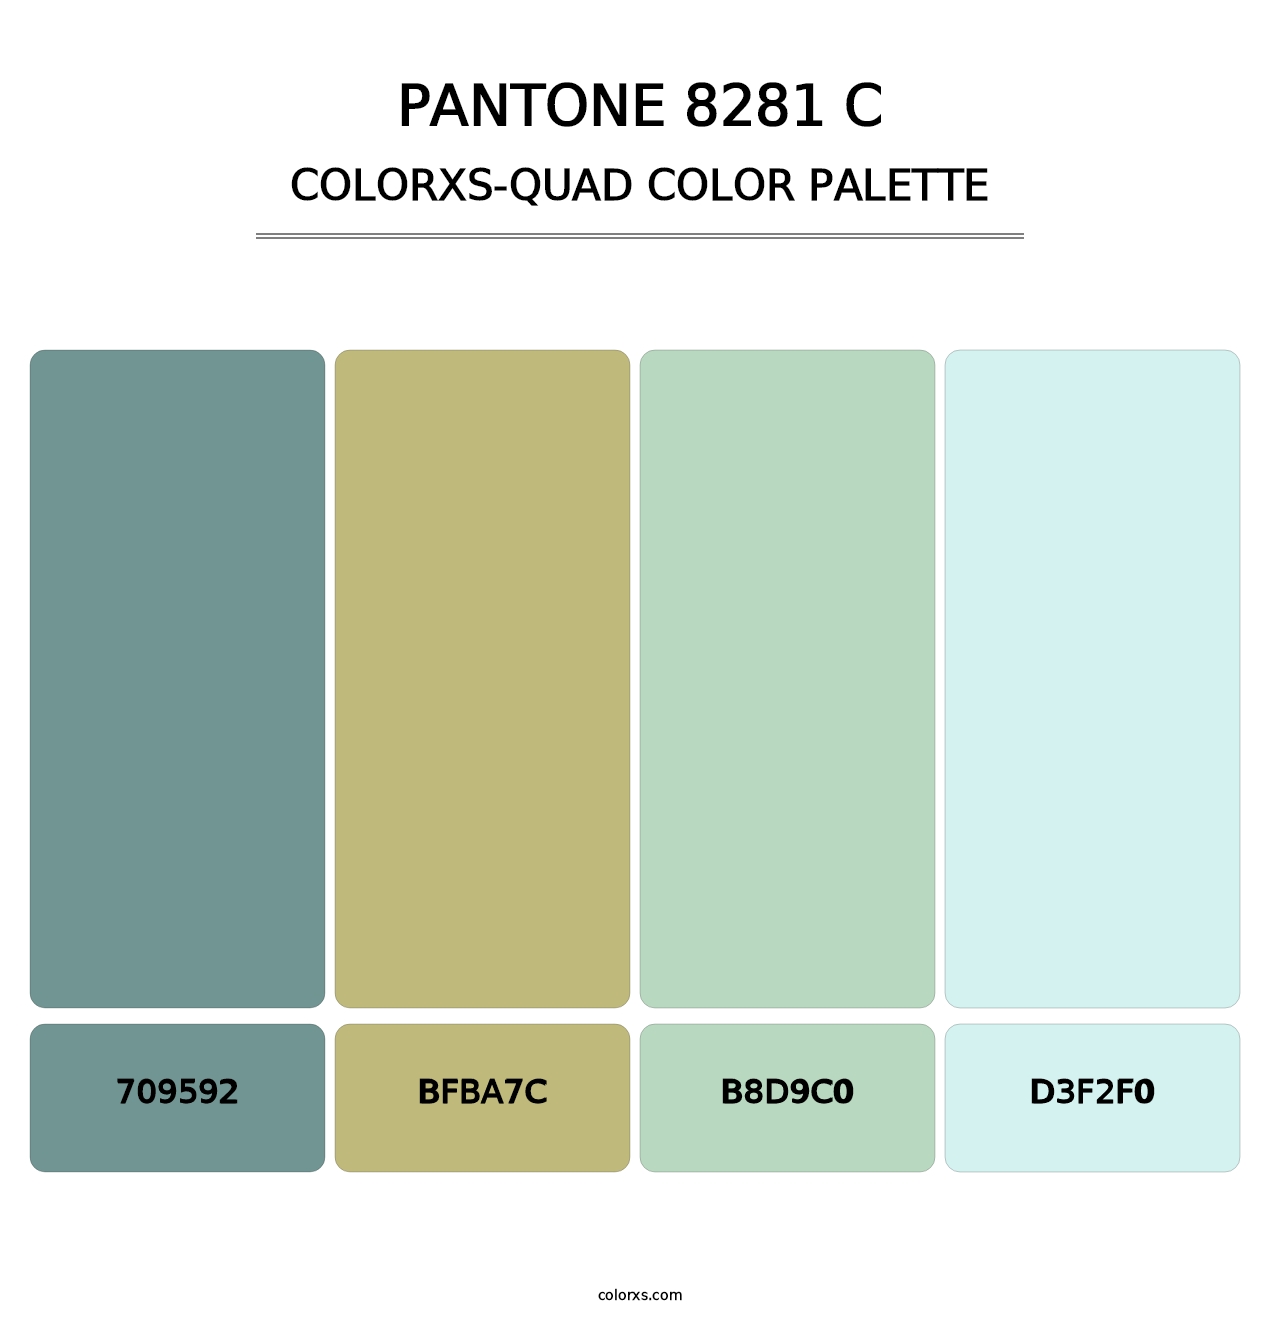 PANTONE 8281 C - Colorxs Quad Palette